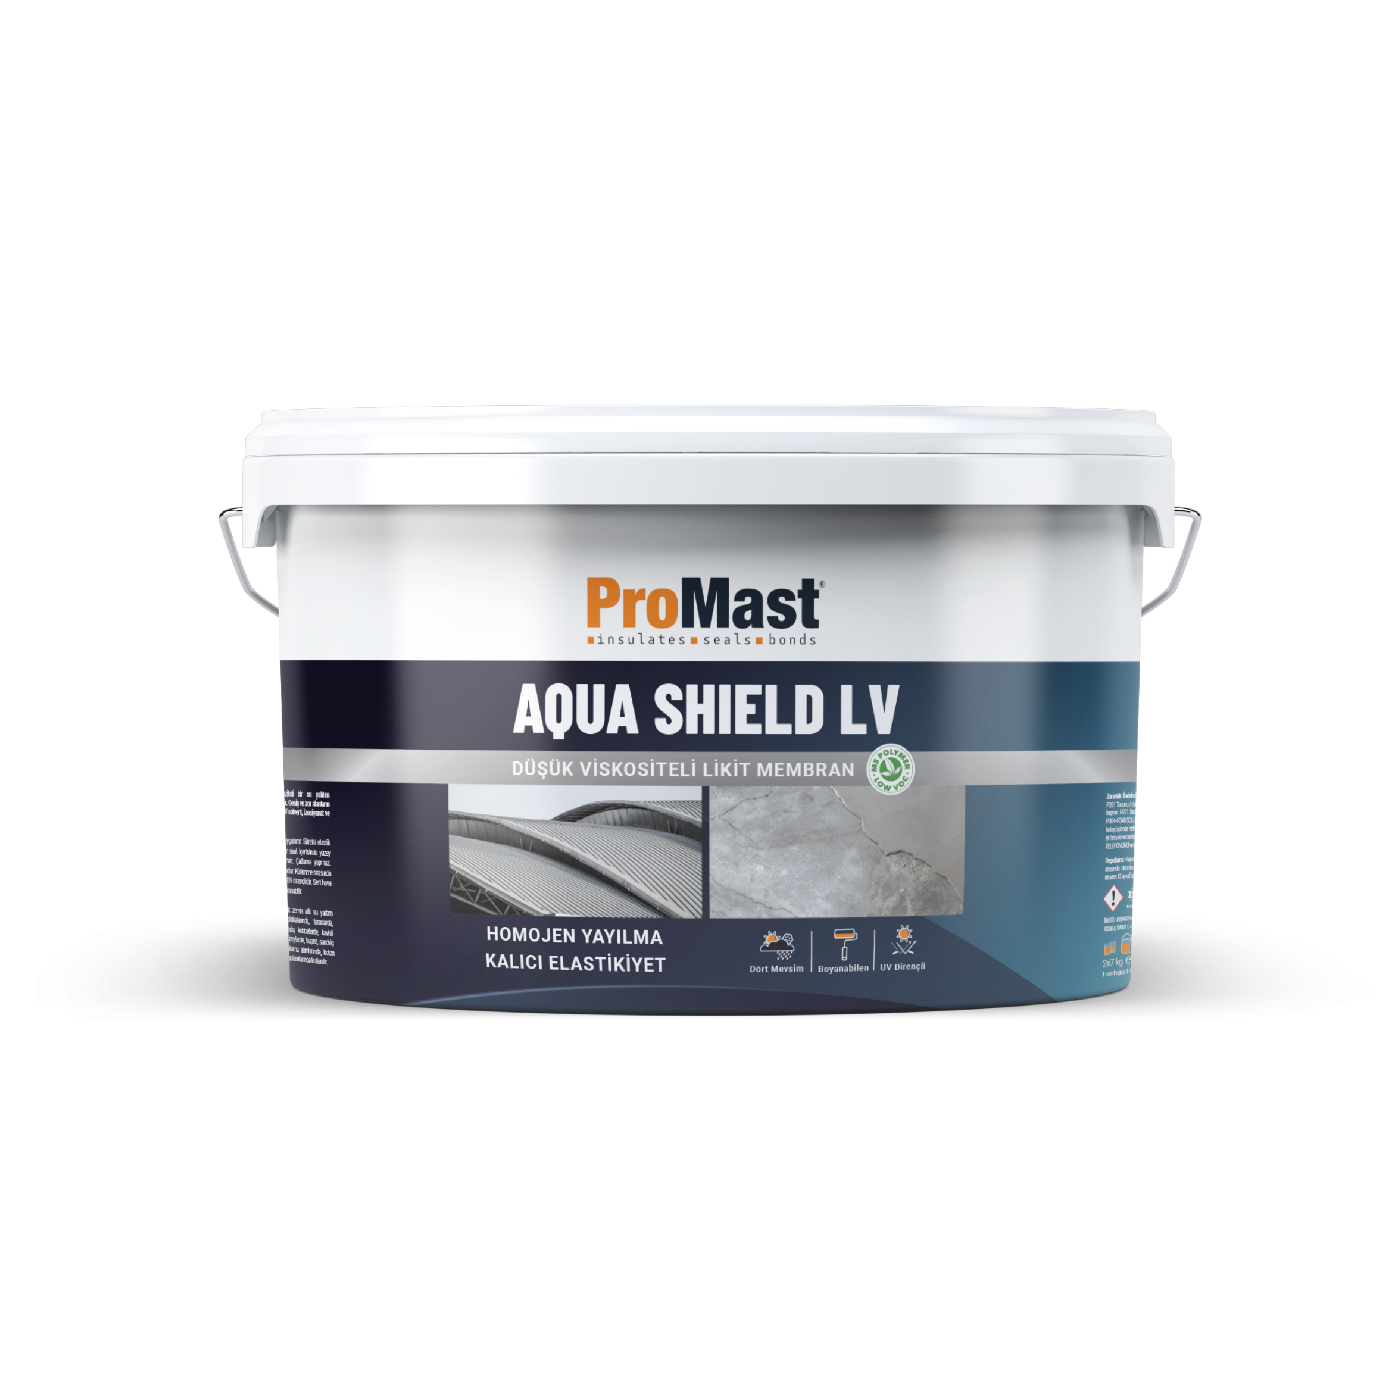 Aqua Shield LV